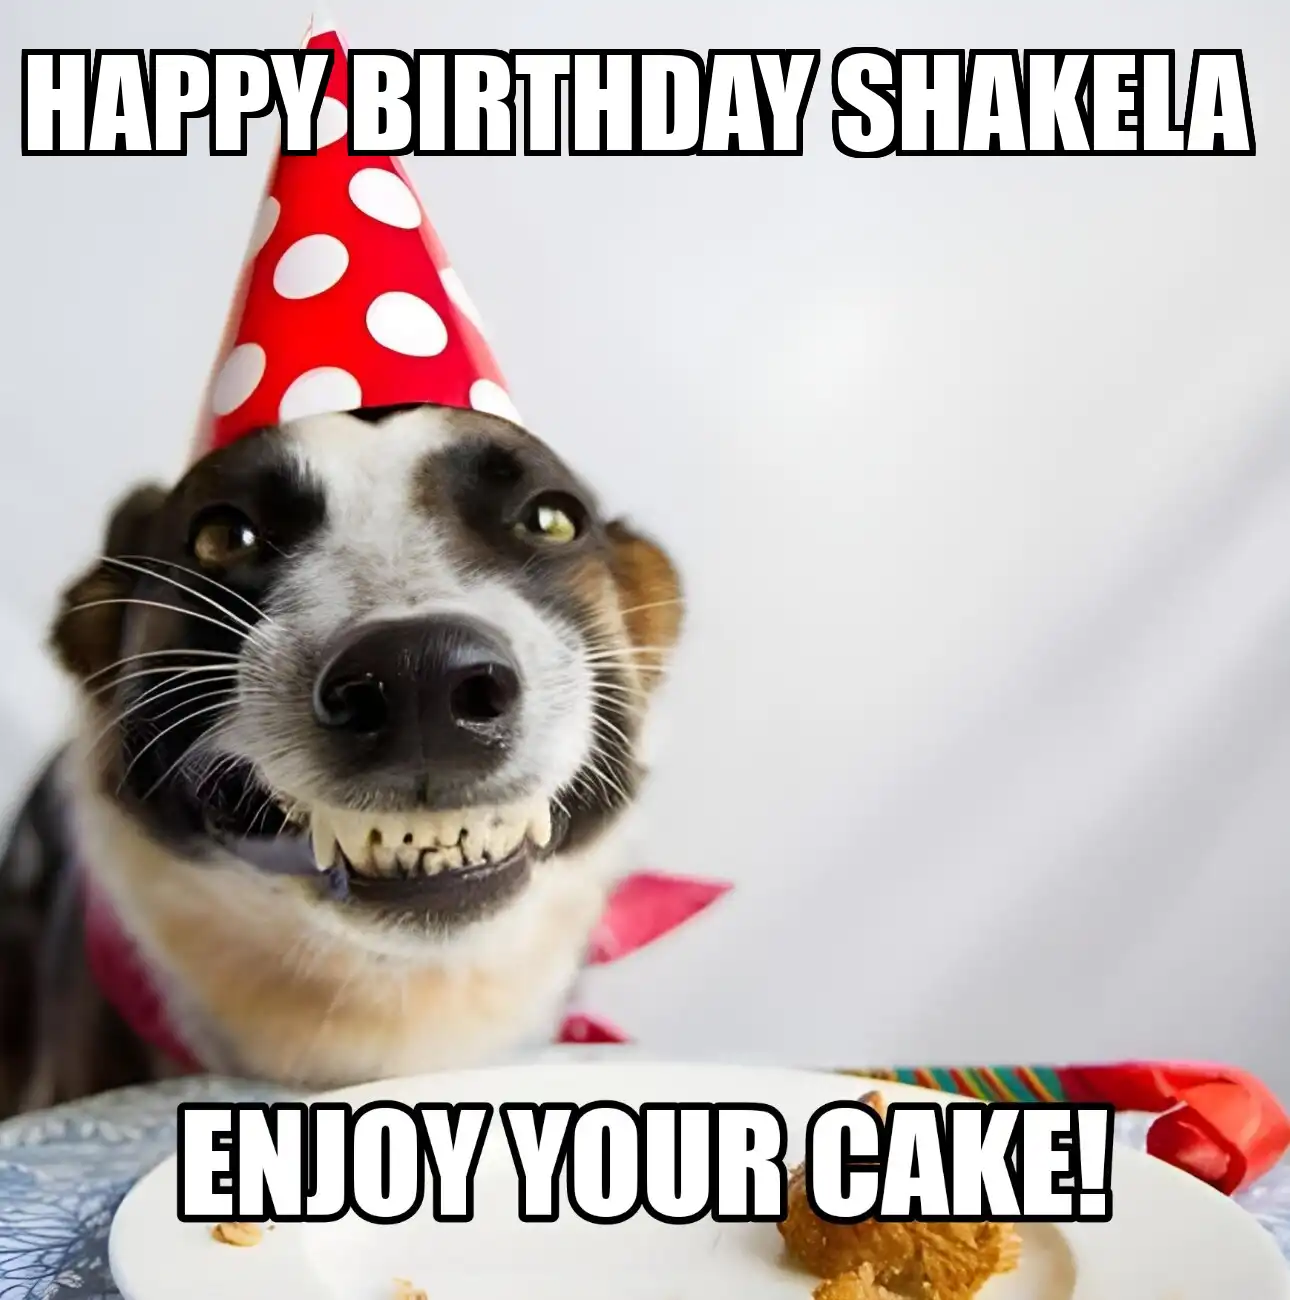 Happy Birthday Shakela Enjoy Your Cake Dog Meme